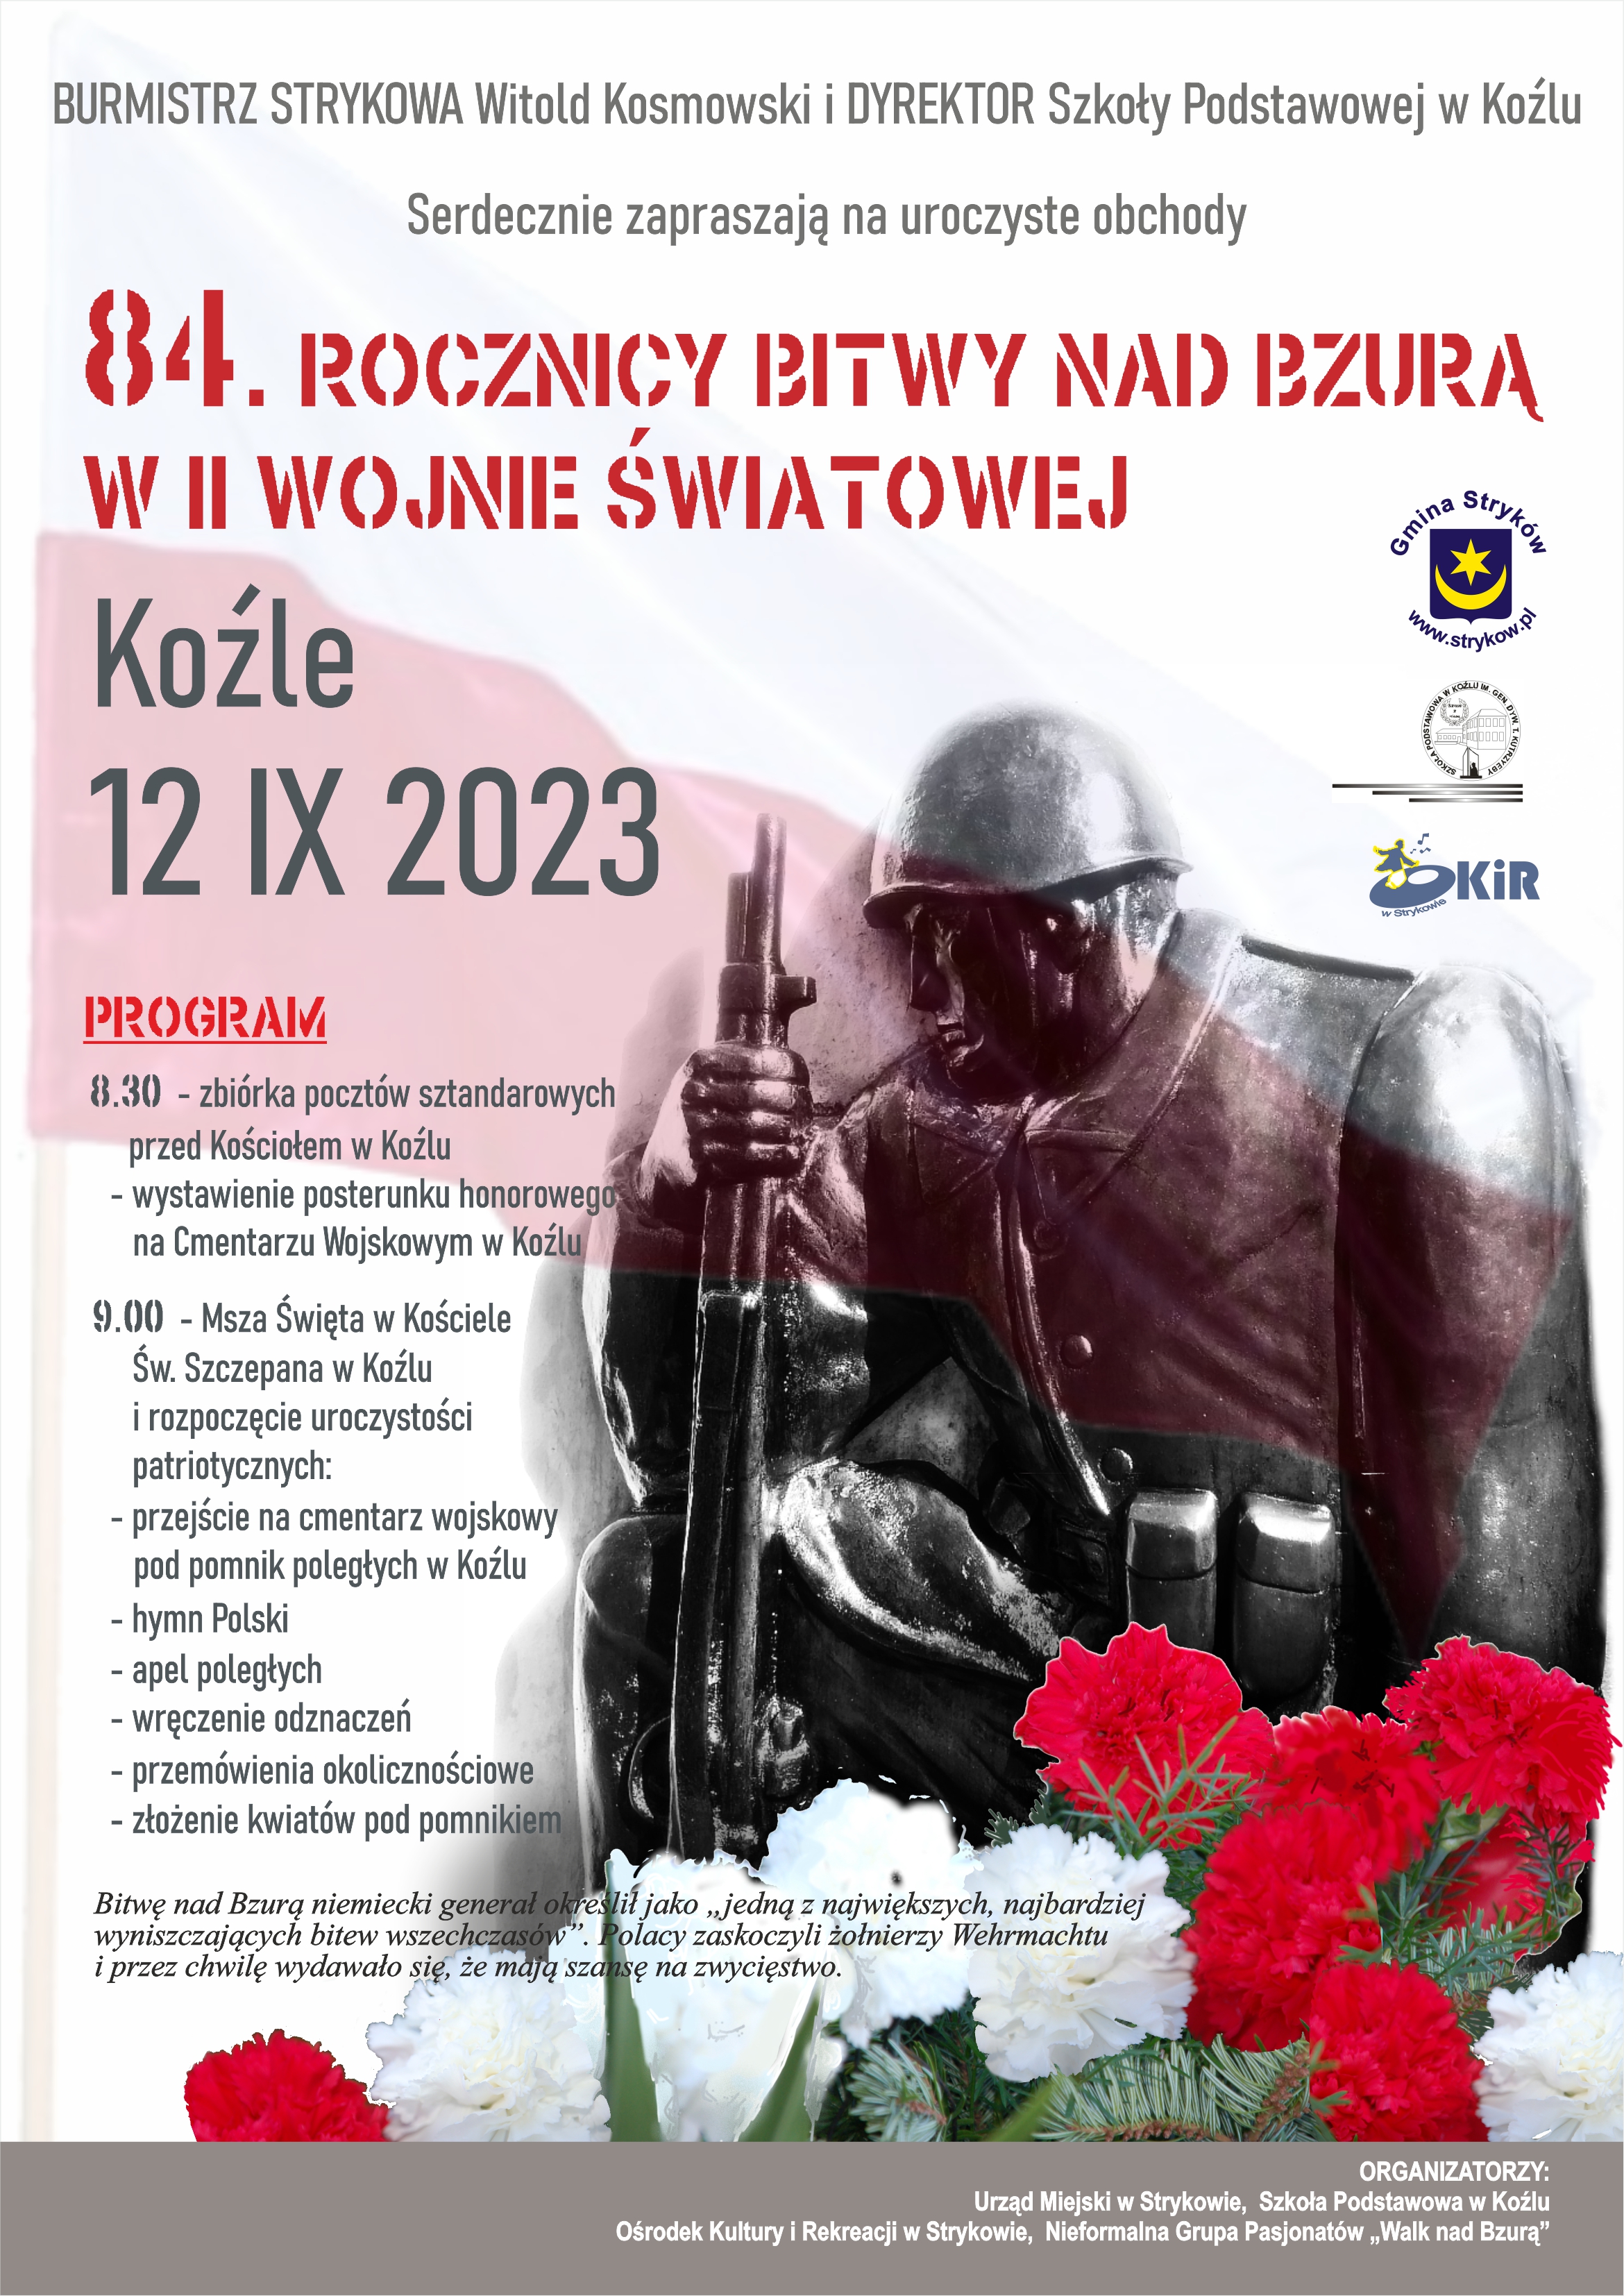 Uroczyste obchody 84. rocznicy Bitwy nad Bzurą